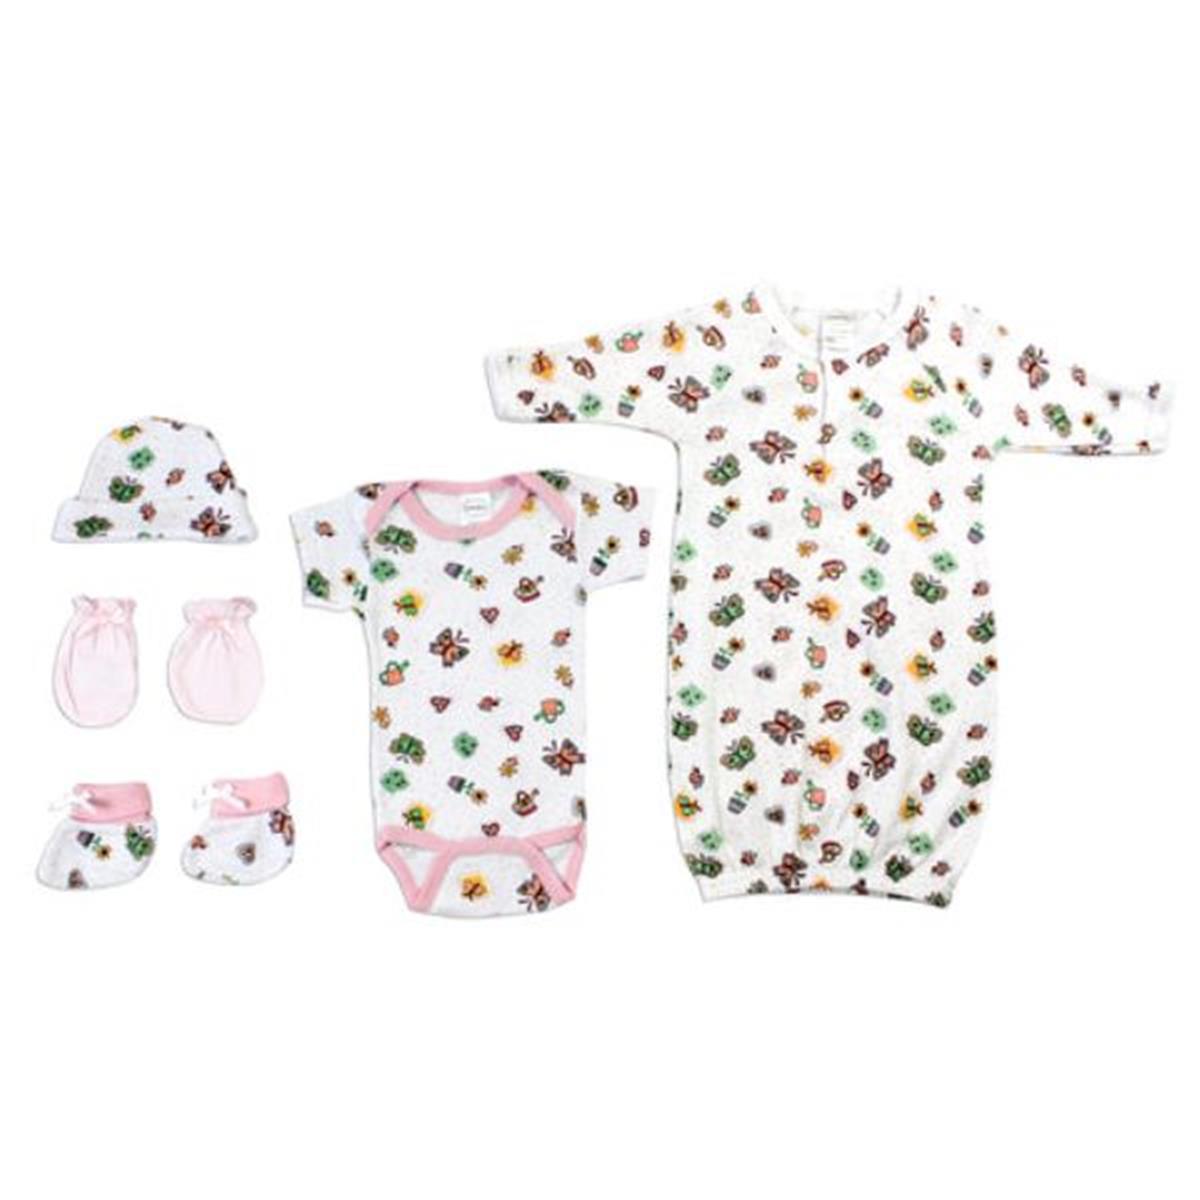 Bambini LS-0084 Newborn Baby Girls Layette Baby Shower Gift Set&#44; White & Pink - Newborn